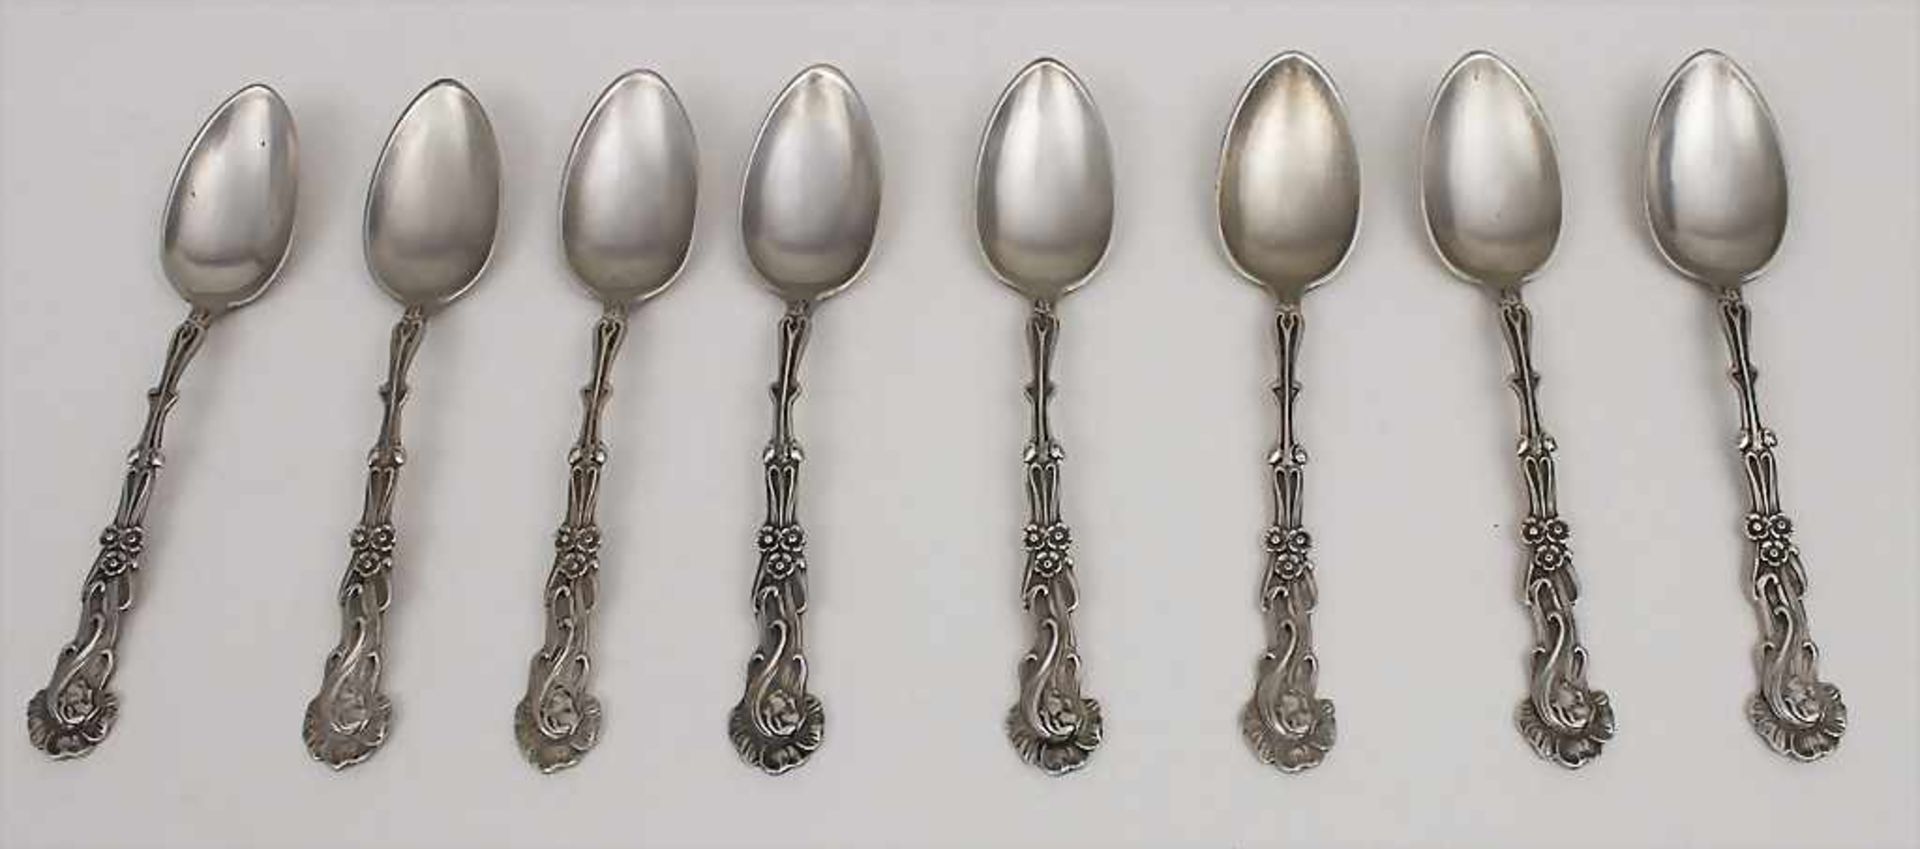 8 Jugendstil Kaffeelöffel / 8 Art Nouveau coffee spoons, deutsch, um 1900Material: Silber,